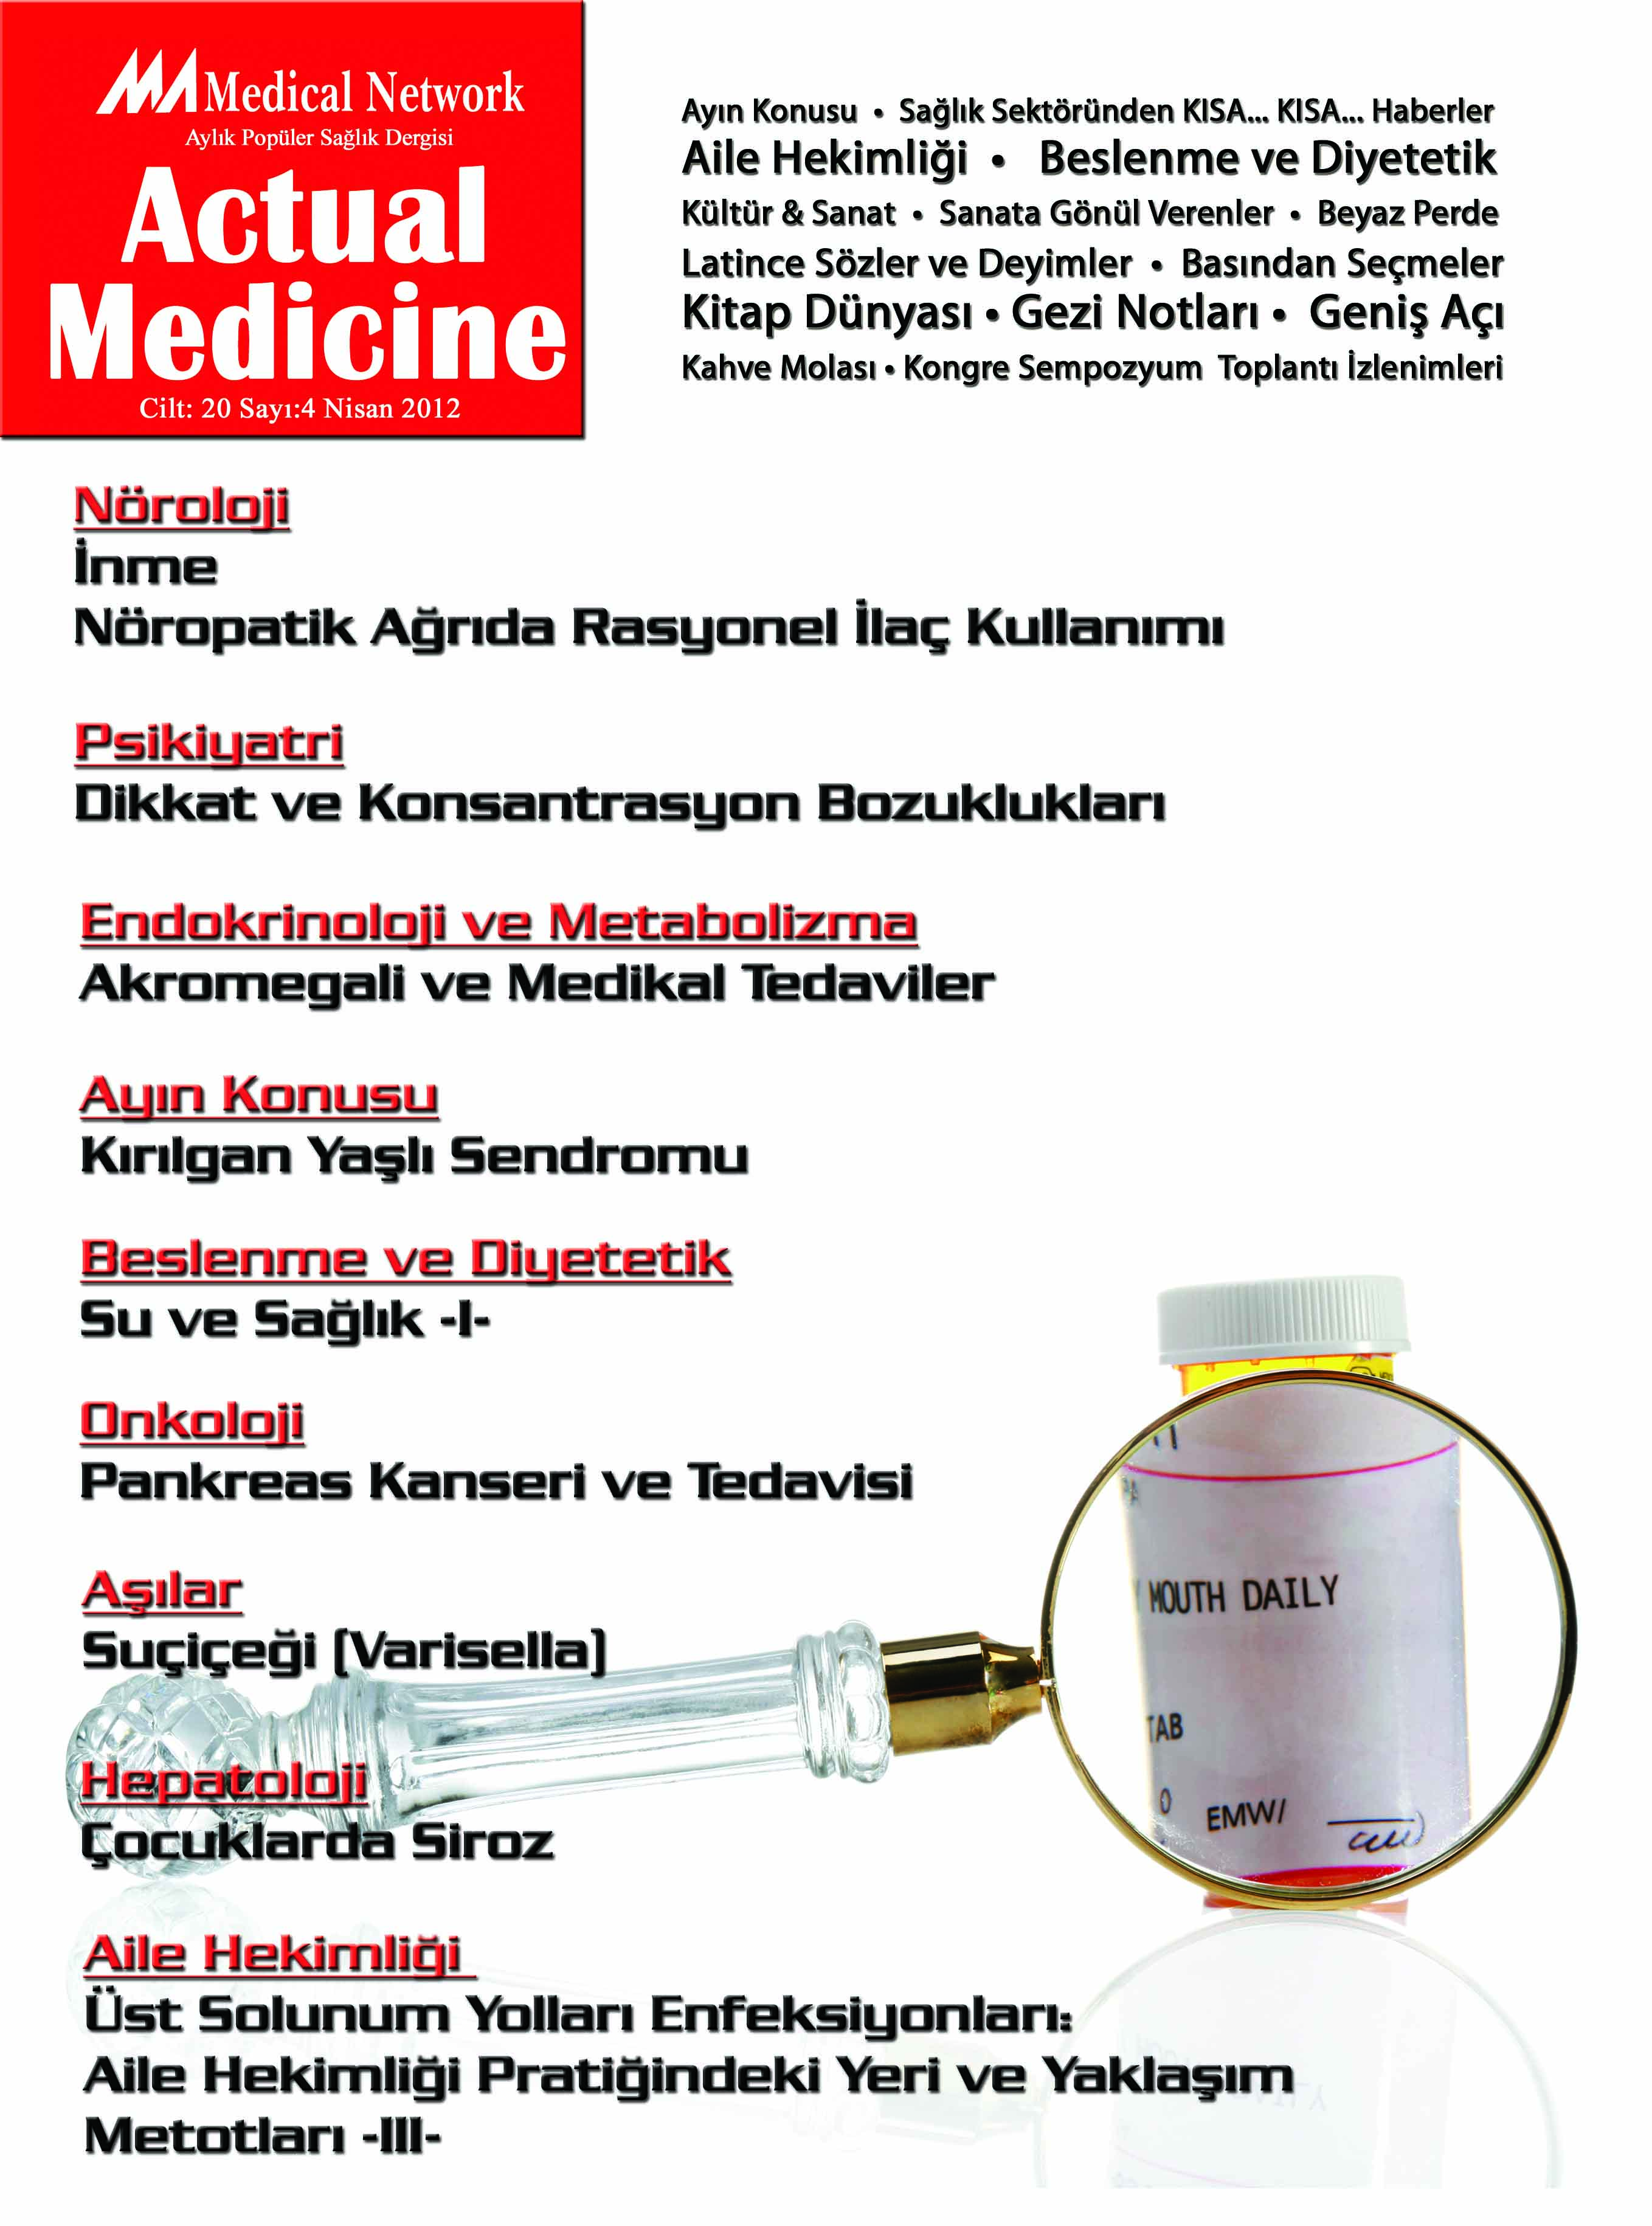 <p>Actual Medicine Cilt: 20 Say: 4 2012</p>